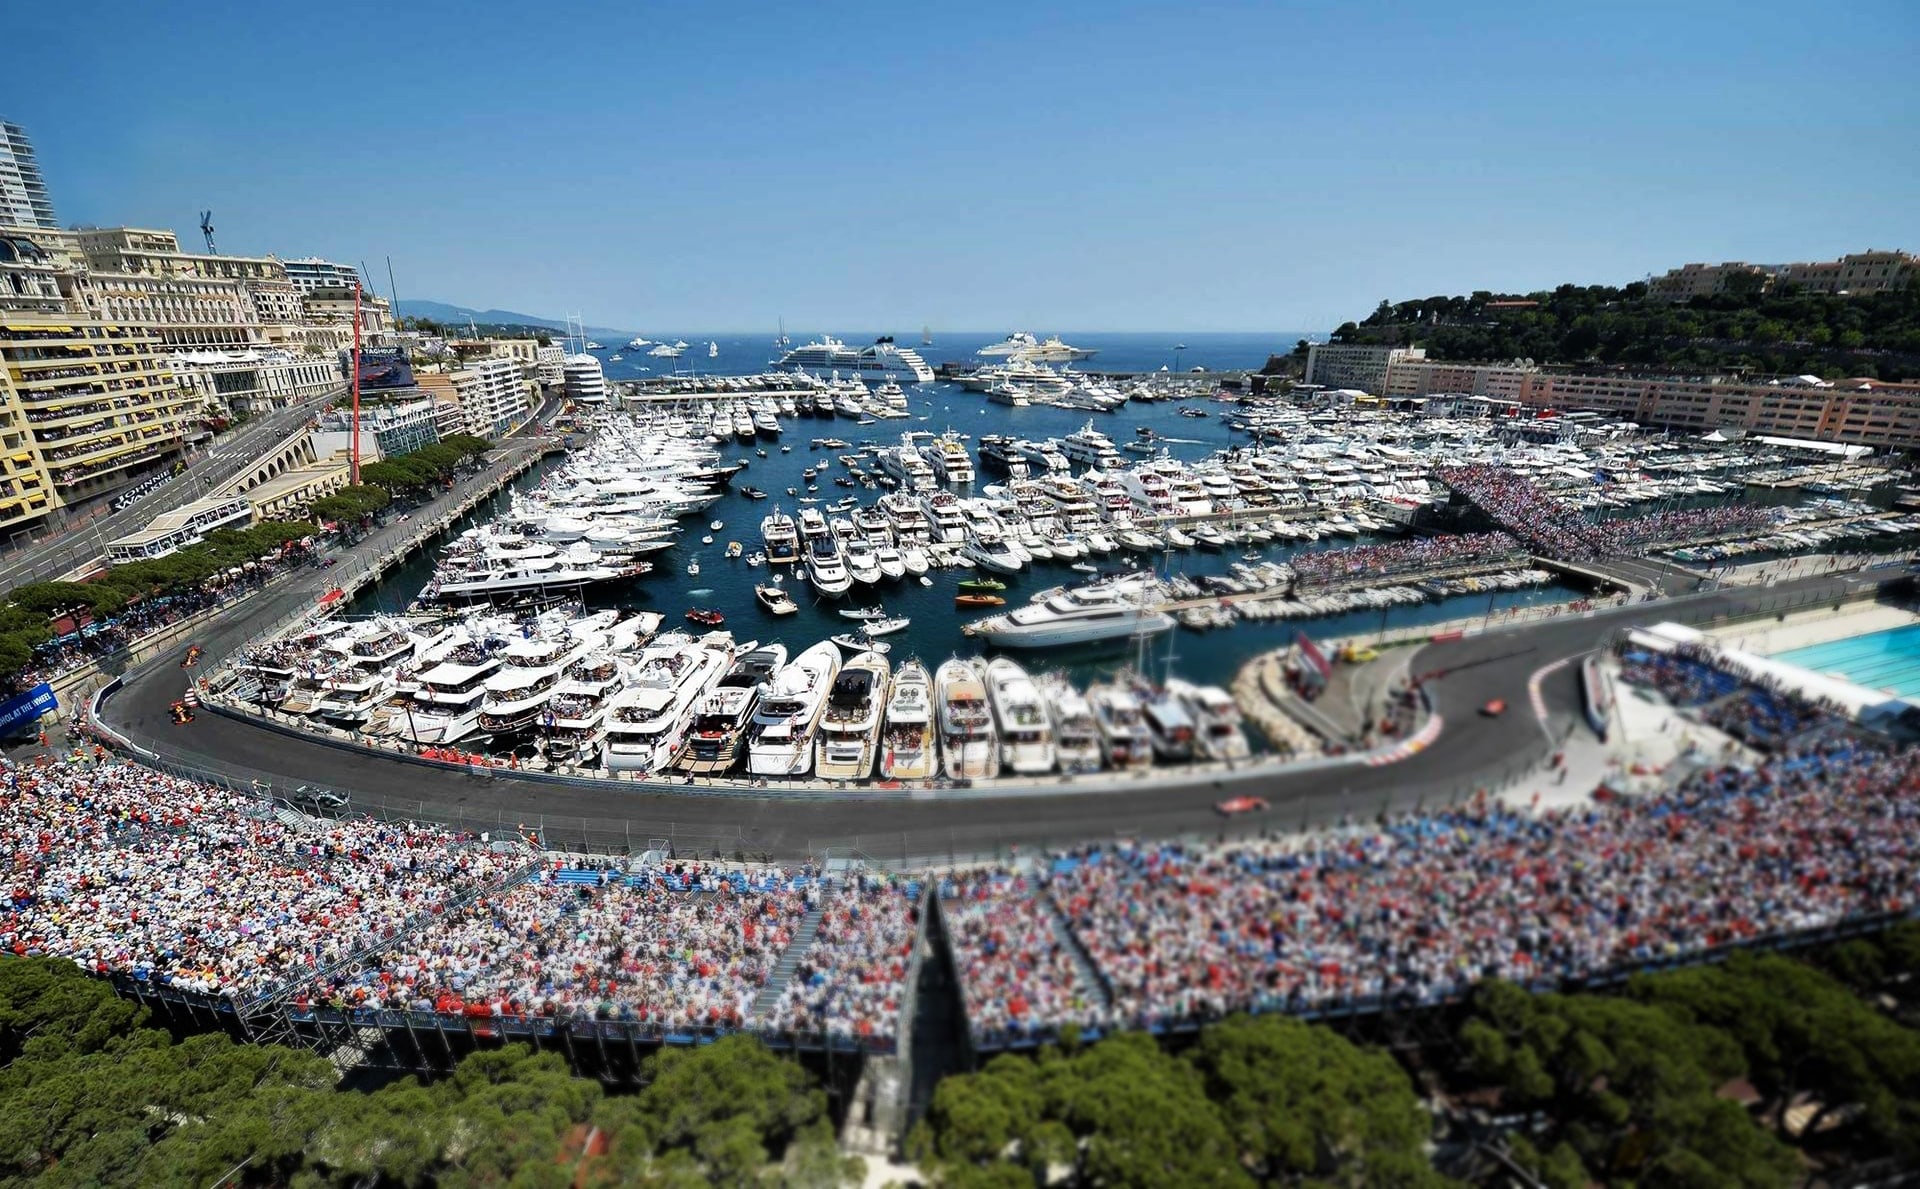 vip terrazzo Formula 1 a Monte Carlo acquista i biglietti per formula a Monaco noleggio Ferrari Lamborghini Porsche Bentley nizza, cannes, saint-tropez